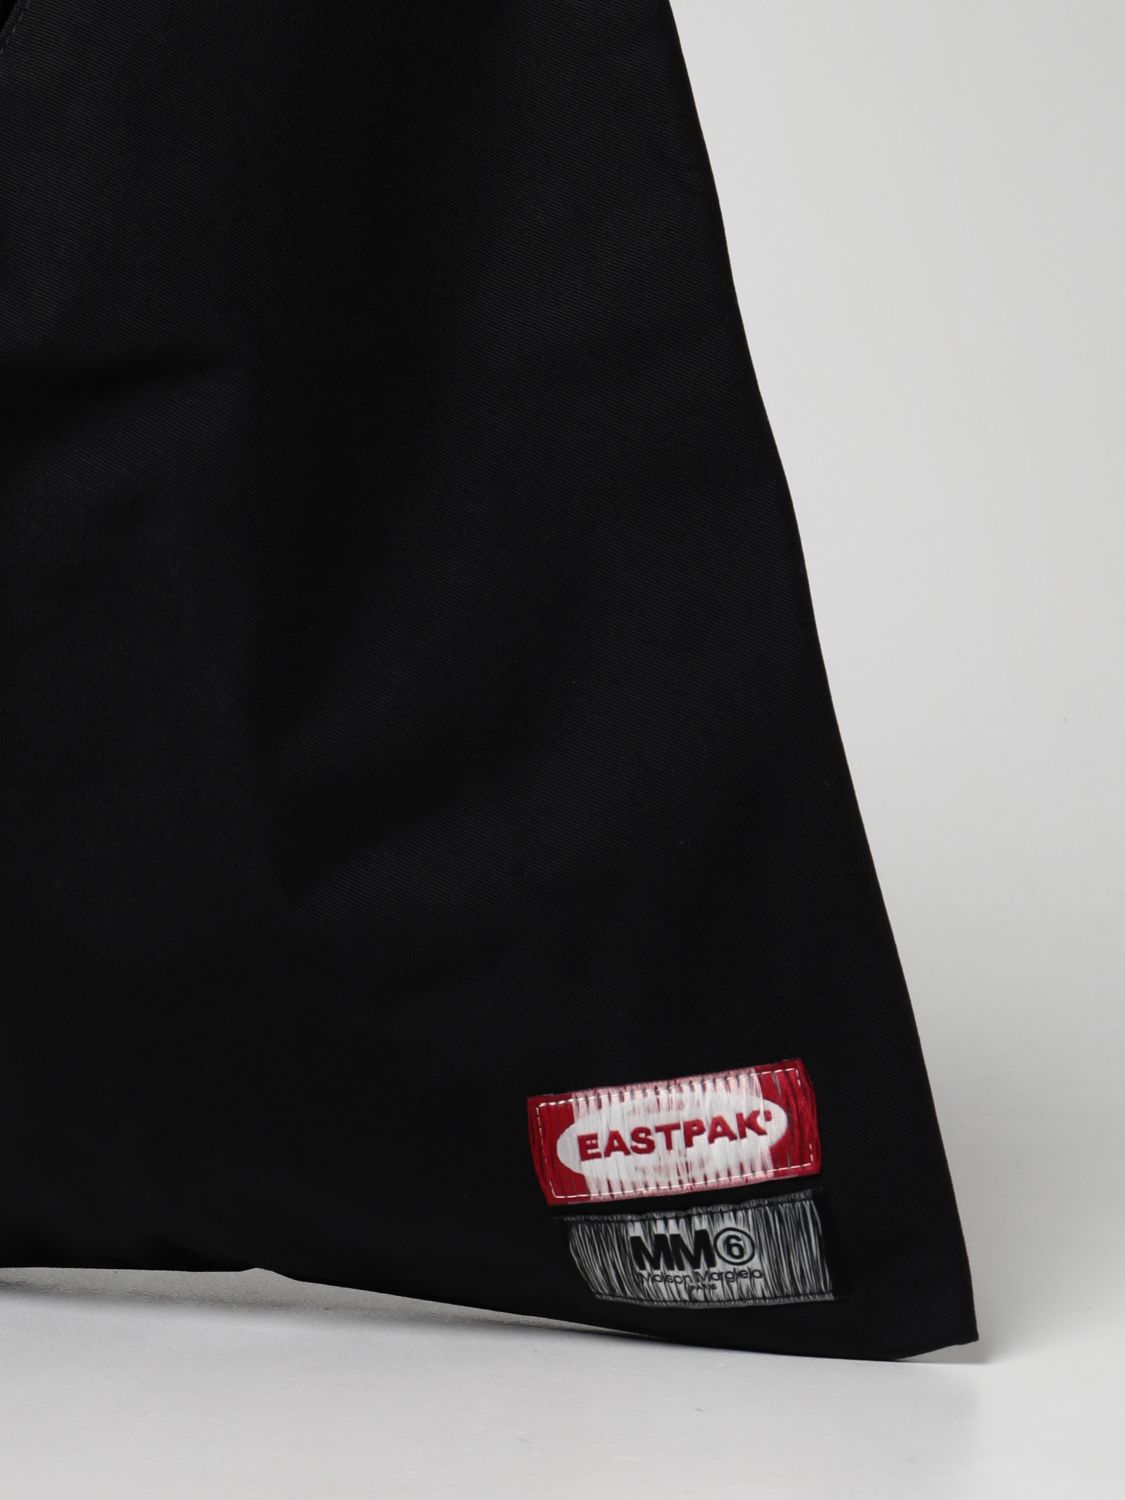 Bags Eastpak: Japanese Mm6 Maison Margiela x Eastpak nylon bag black 3